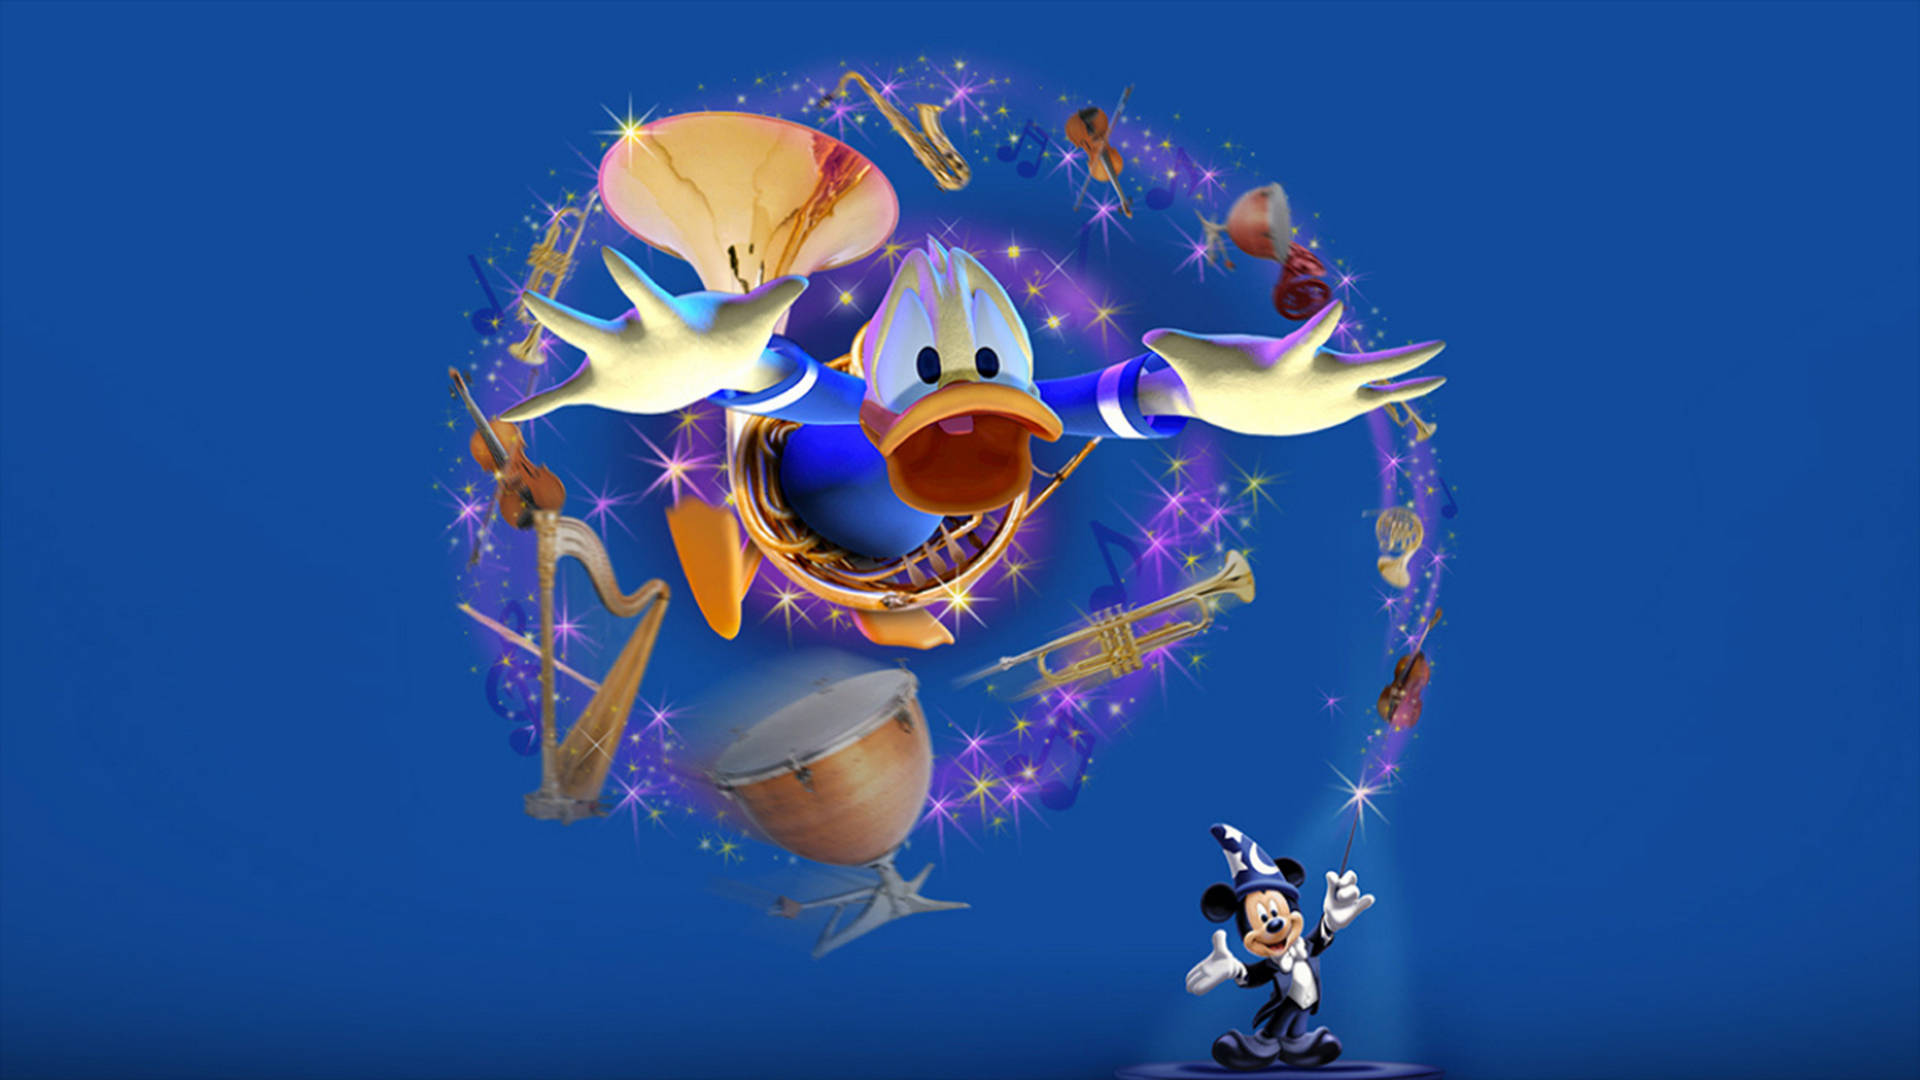 3dmagischer Donald Duck Wallpaper